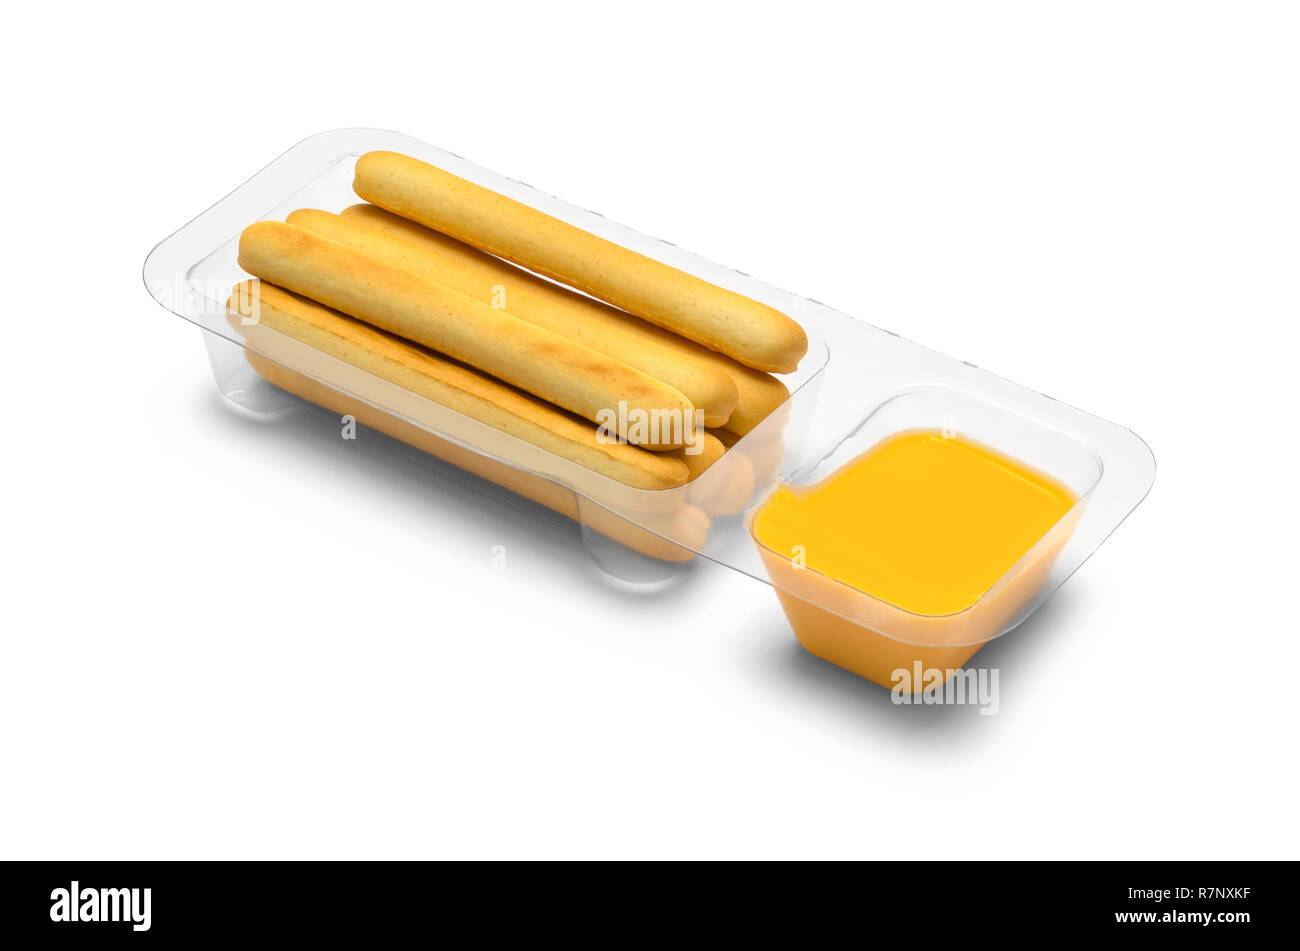 Et Trempette au fromage Craquelins Sticks Snack isolé sur un fond blanc. Banque D'Images